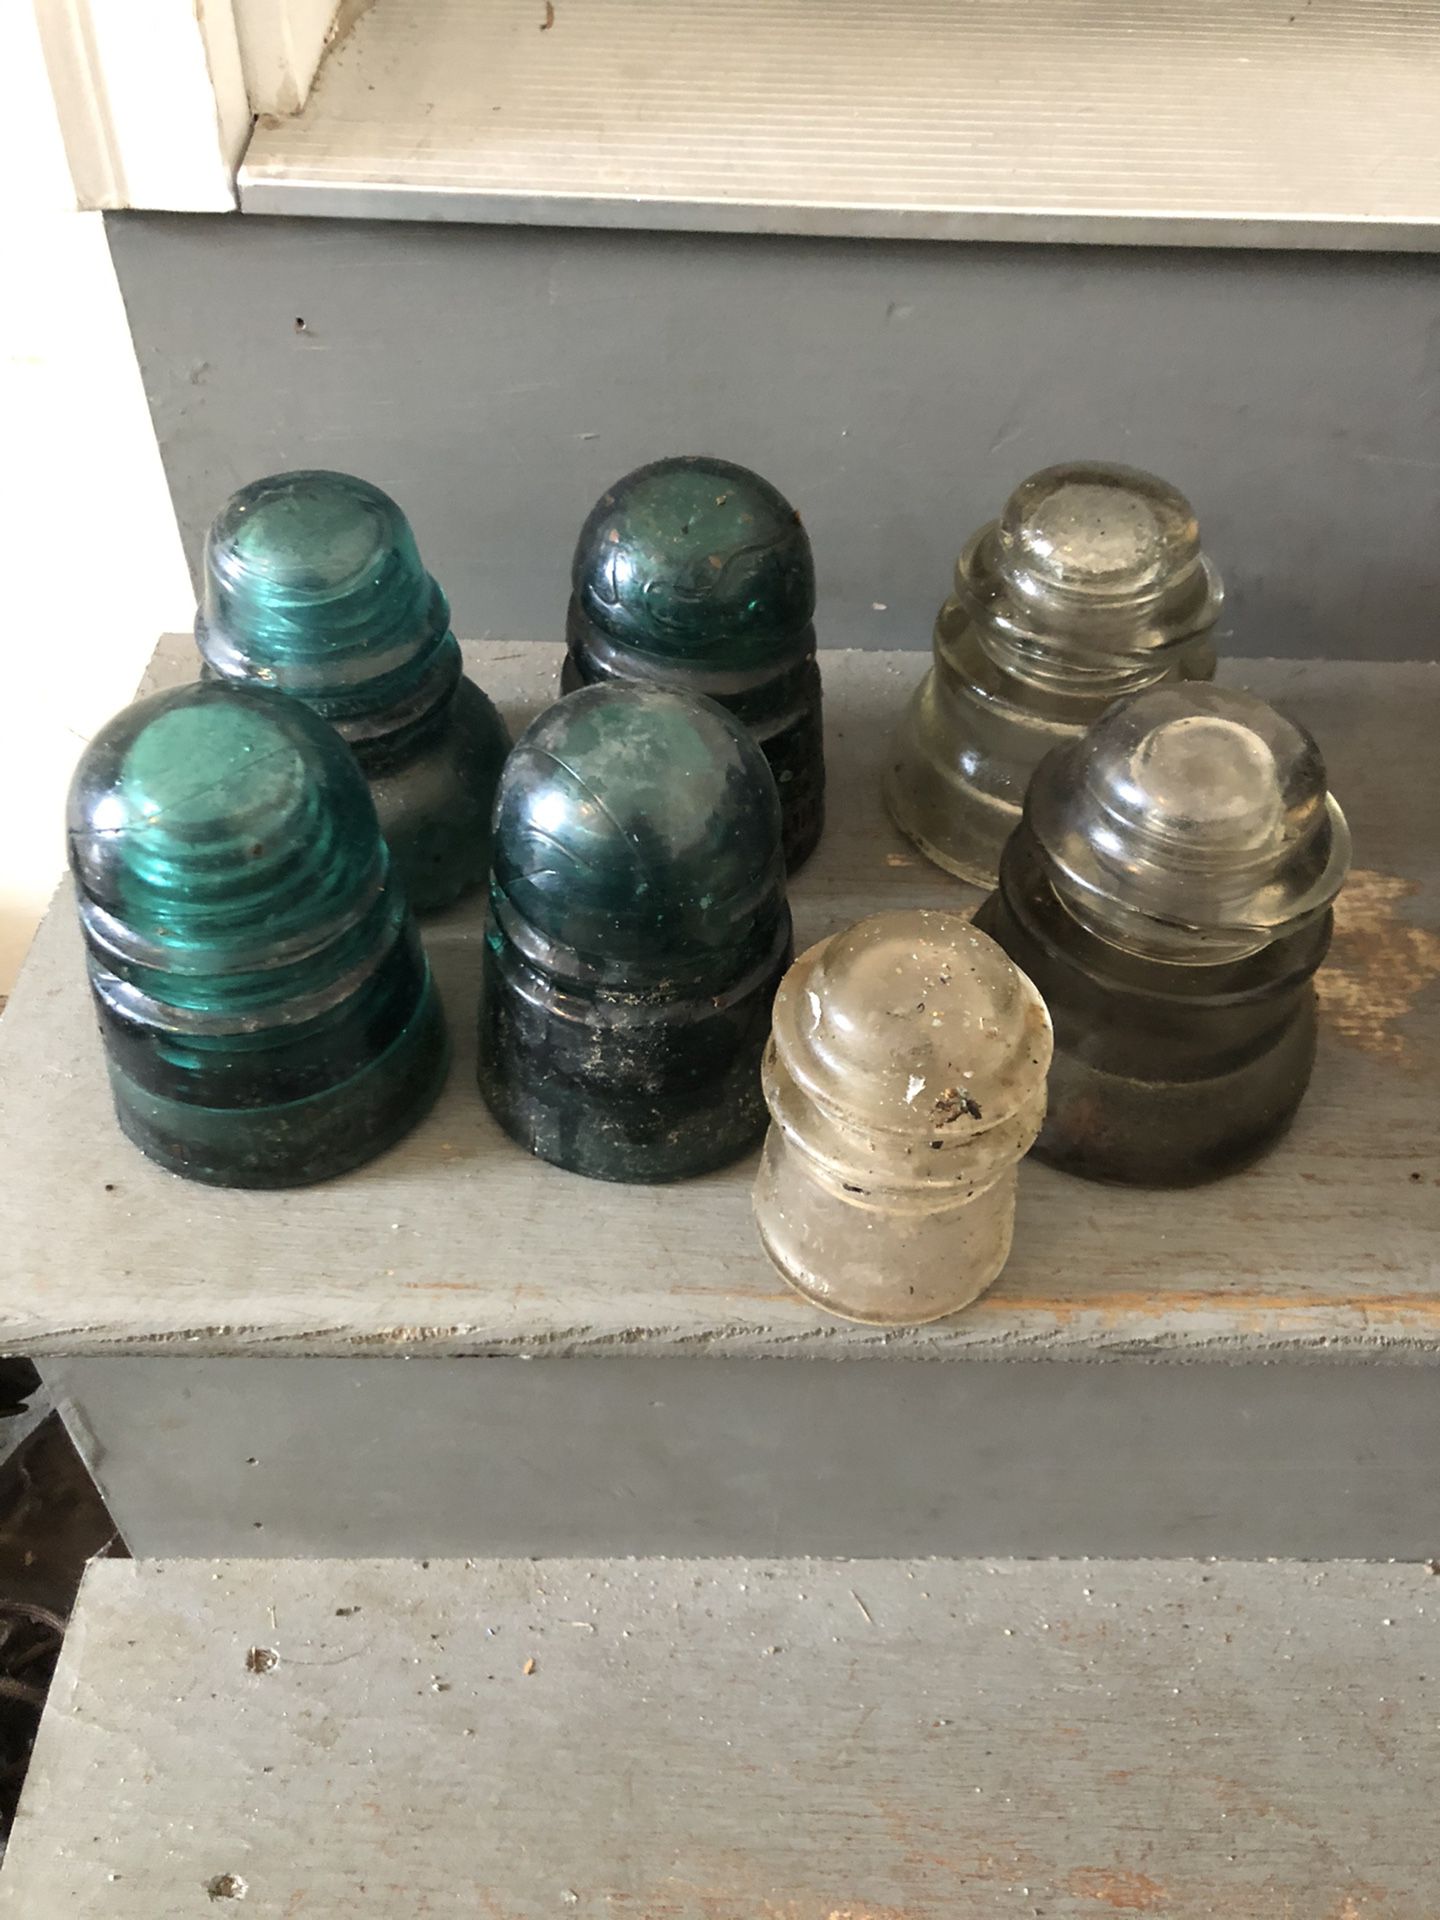 Antique glass insulators